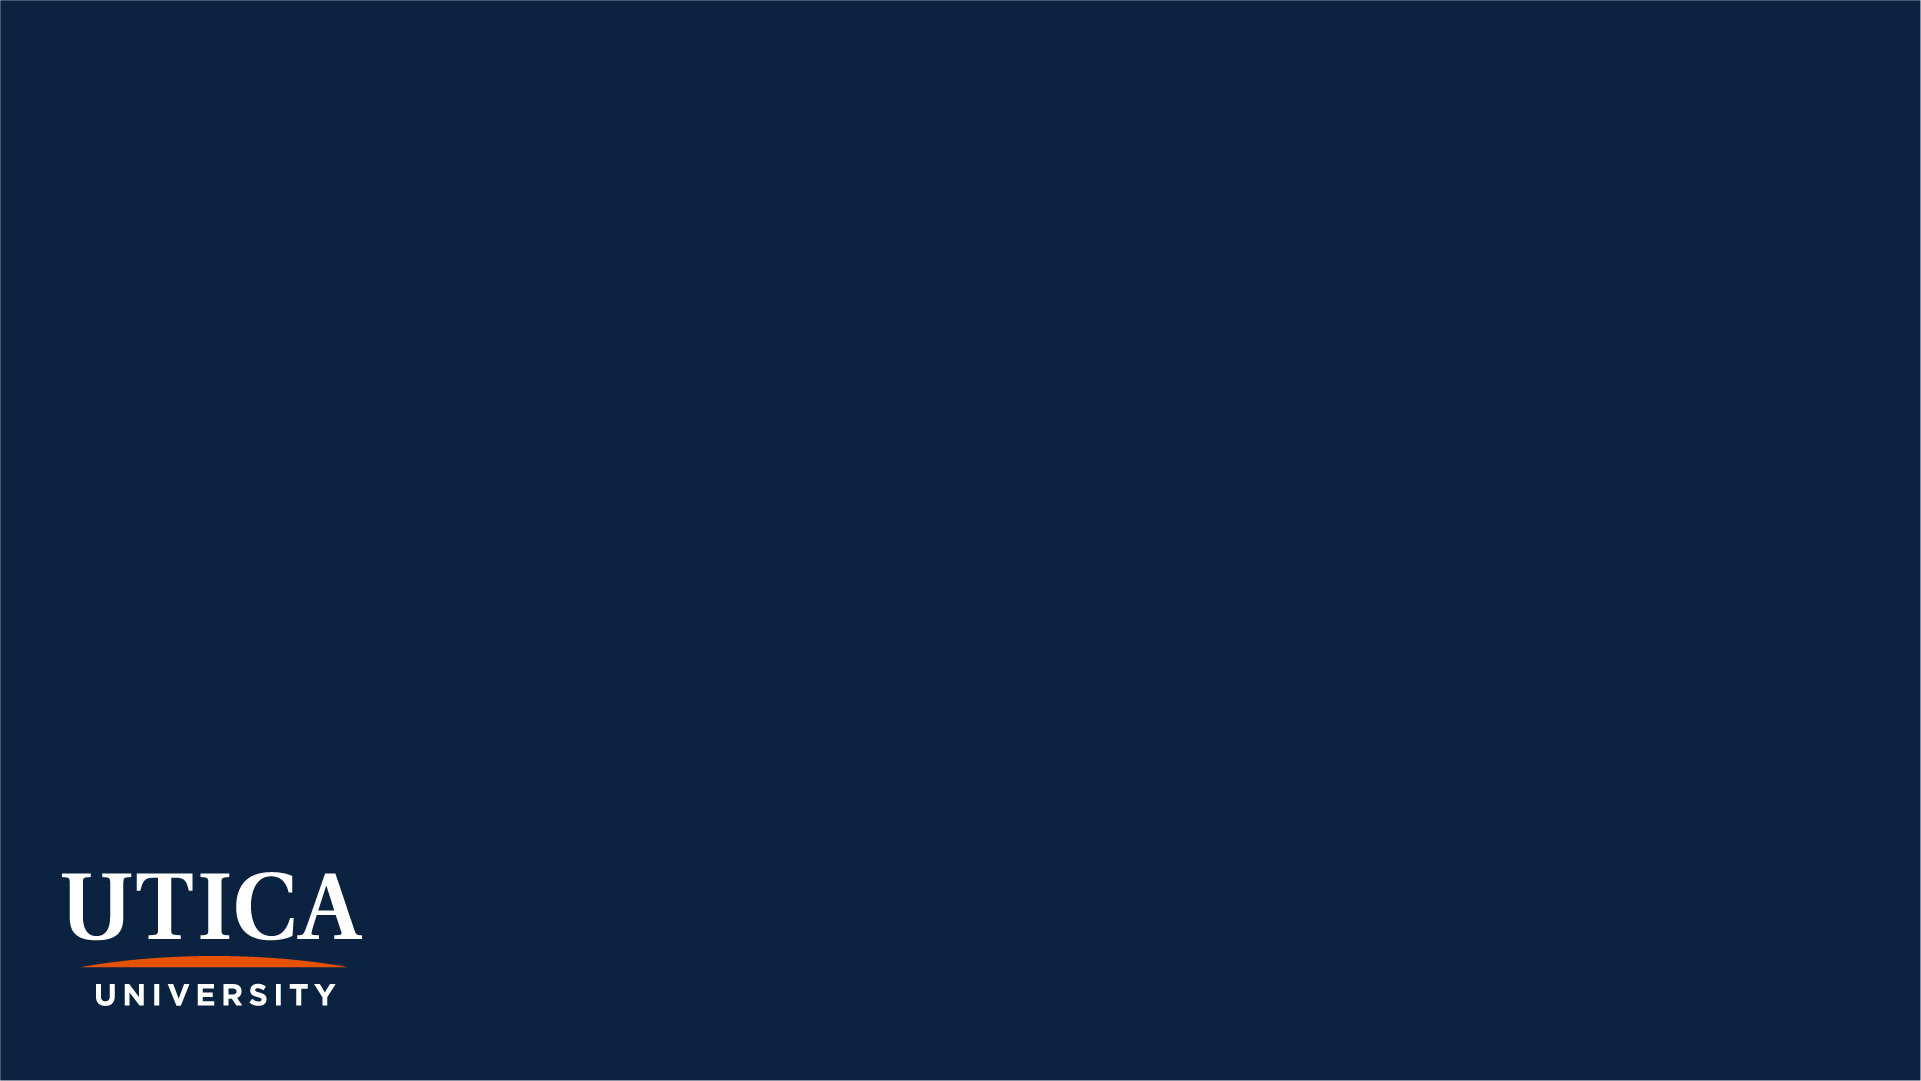 Utica logo in bottom left corner of blue background.